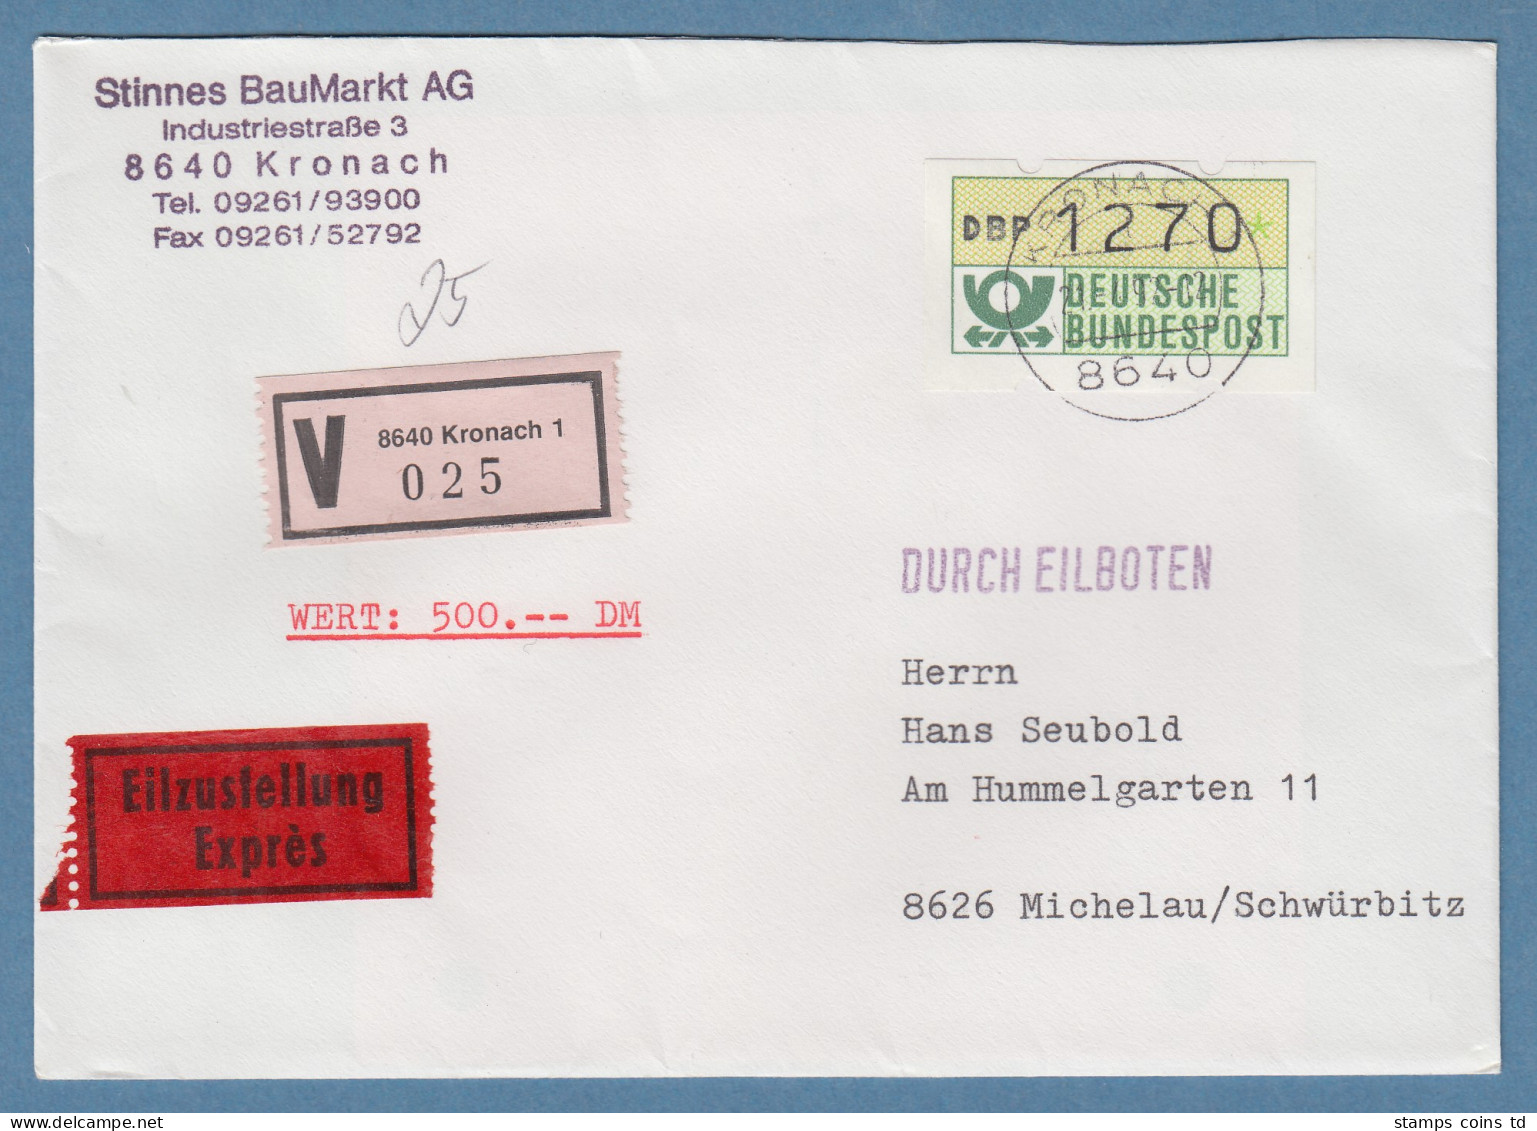 NAGLER-ATM Mi-Nr 1.2 Wert 1270Pfg Auf Eil-Wert-Brief Ab KRONACH 21.4.92 - Machine Labels [ATM]